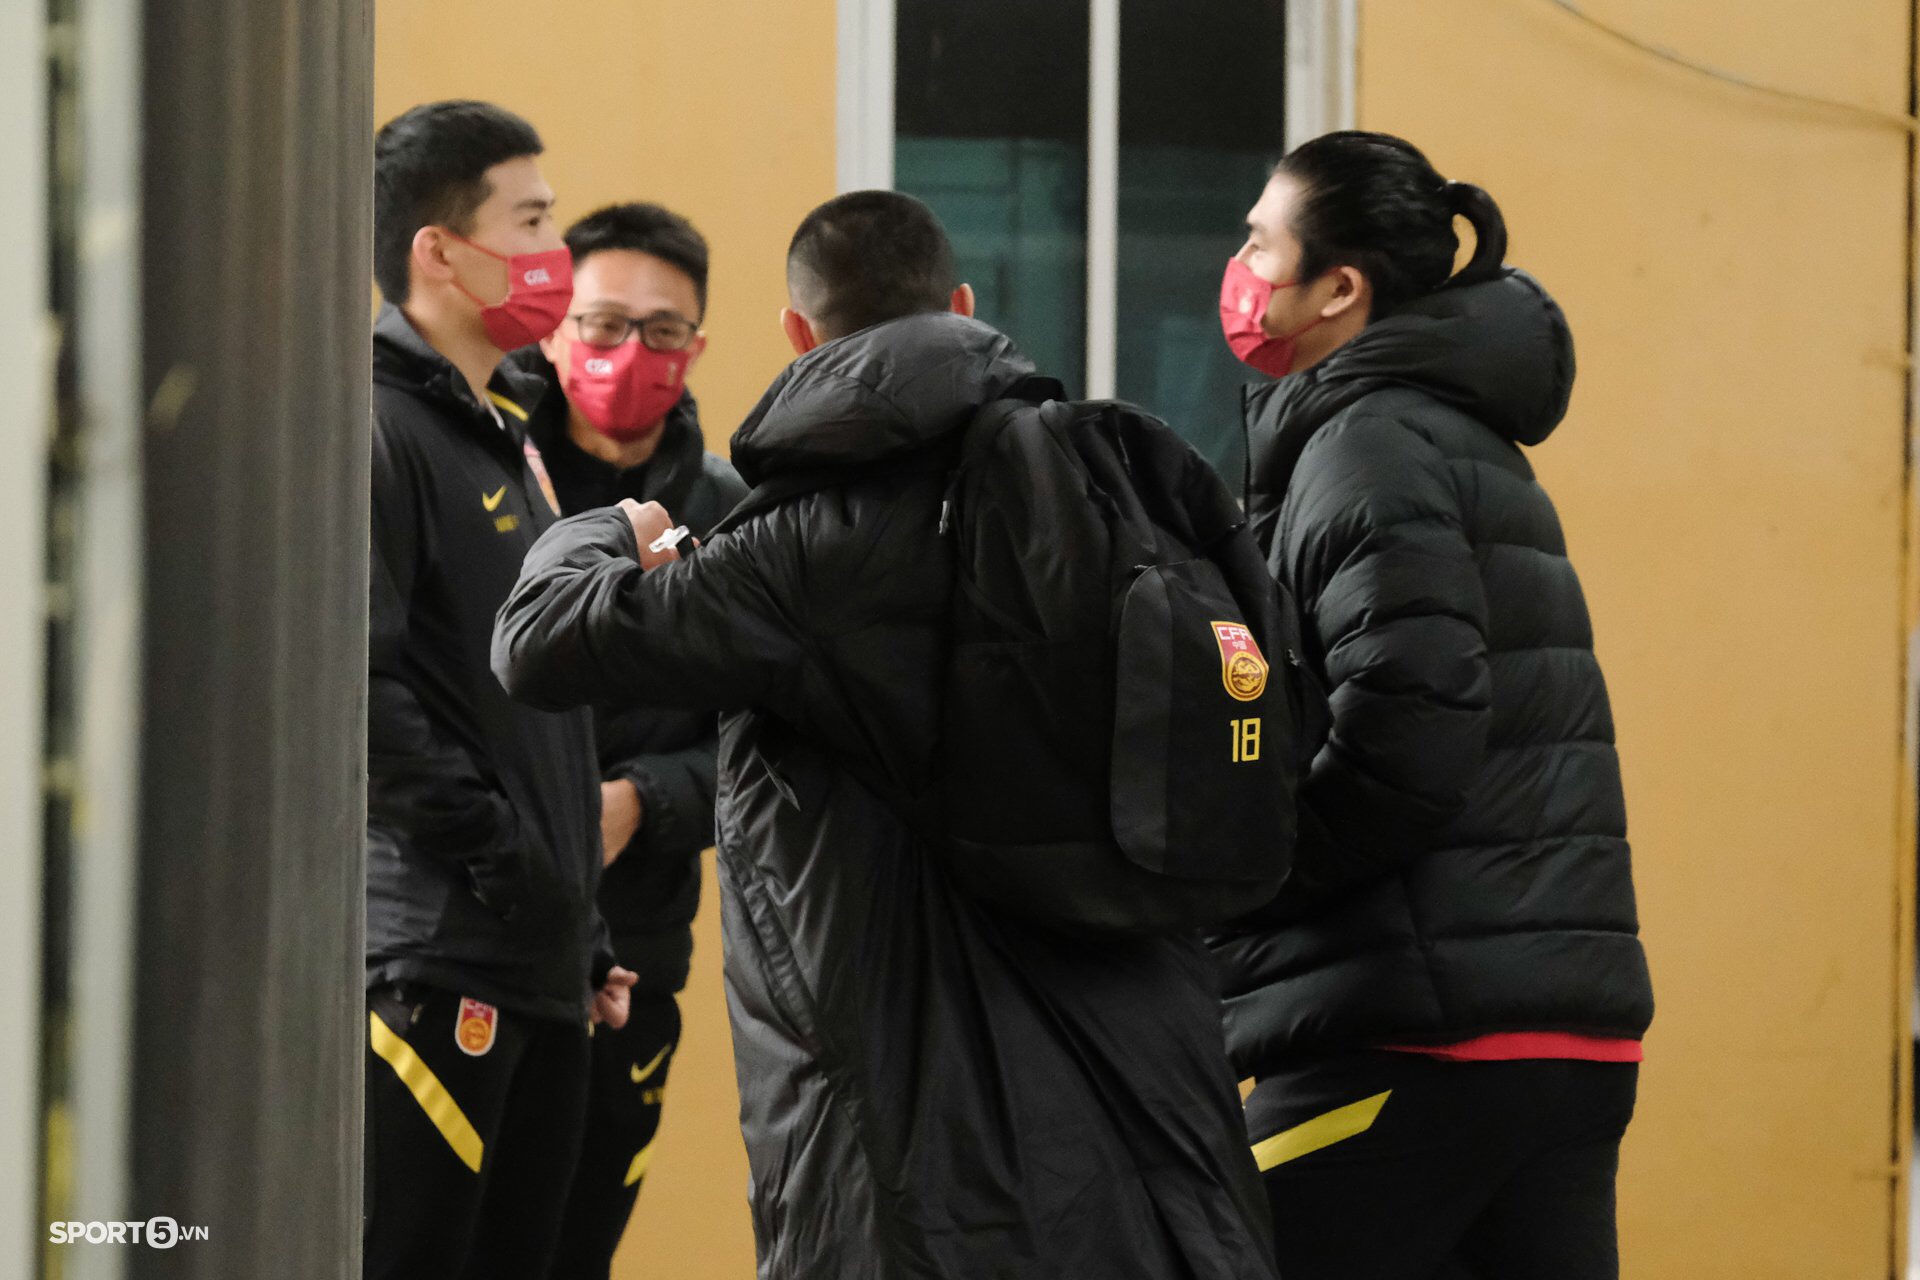 Fan nhí đợi gặp Quang Hải trước trận tuyển Việt Nam gặp tuyển Trung Quốc bất chấp giá rét - Ảnh 8.